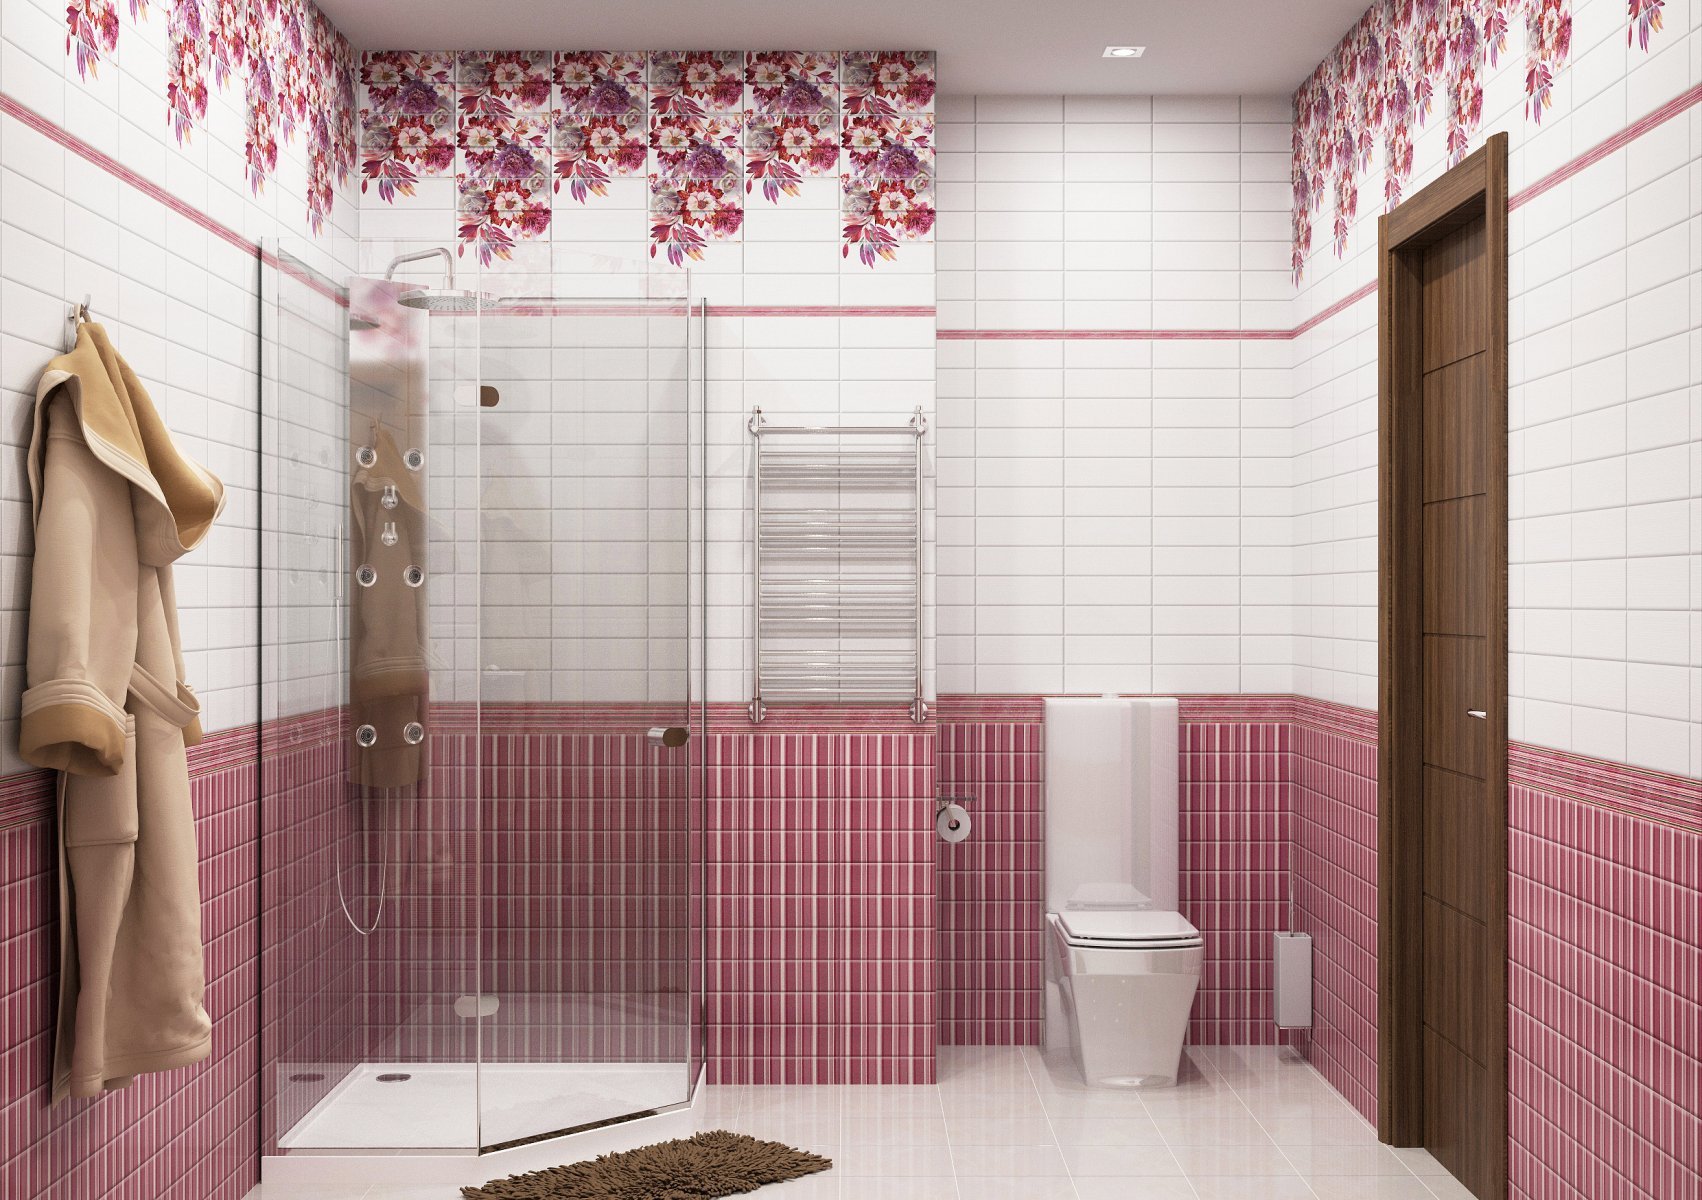 otdelka tualeta plastikovymi panelyami20 - Отделка туалета пластиковыми панелями